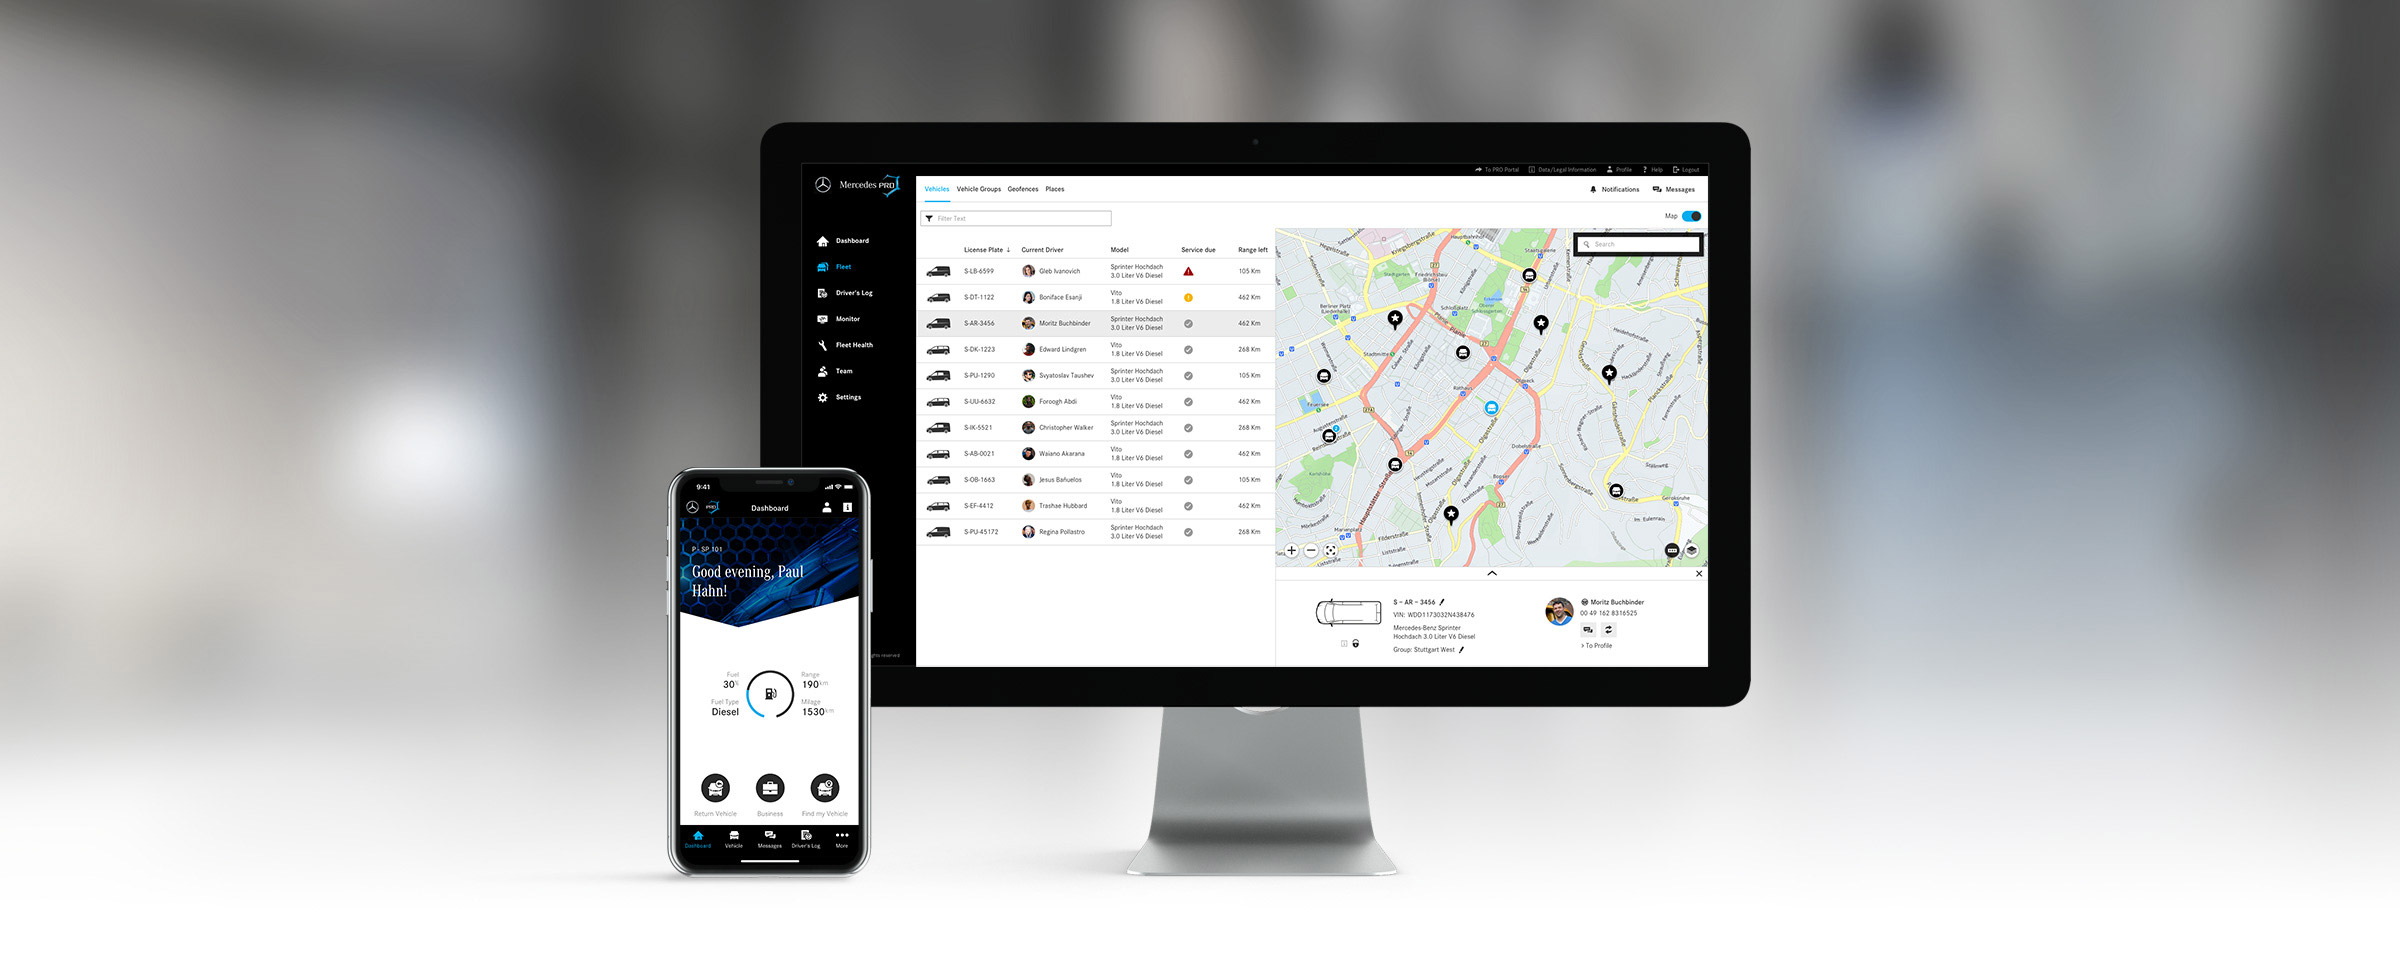 Die Smartphone Mercedes PRO Connect App zeigt das Dashboard, der Computer zeigt das Fleet Management Tool